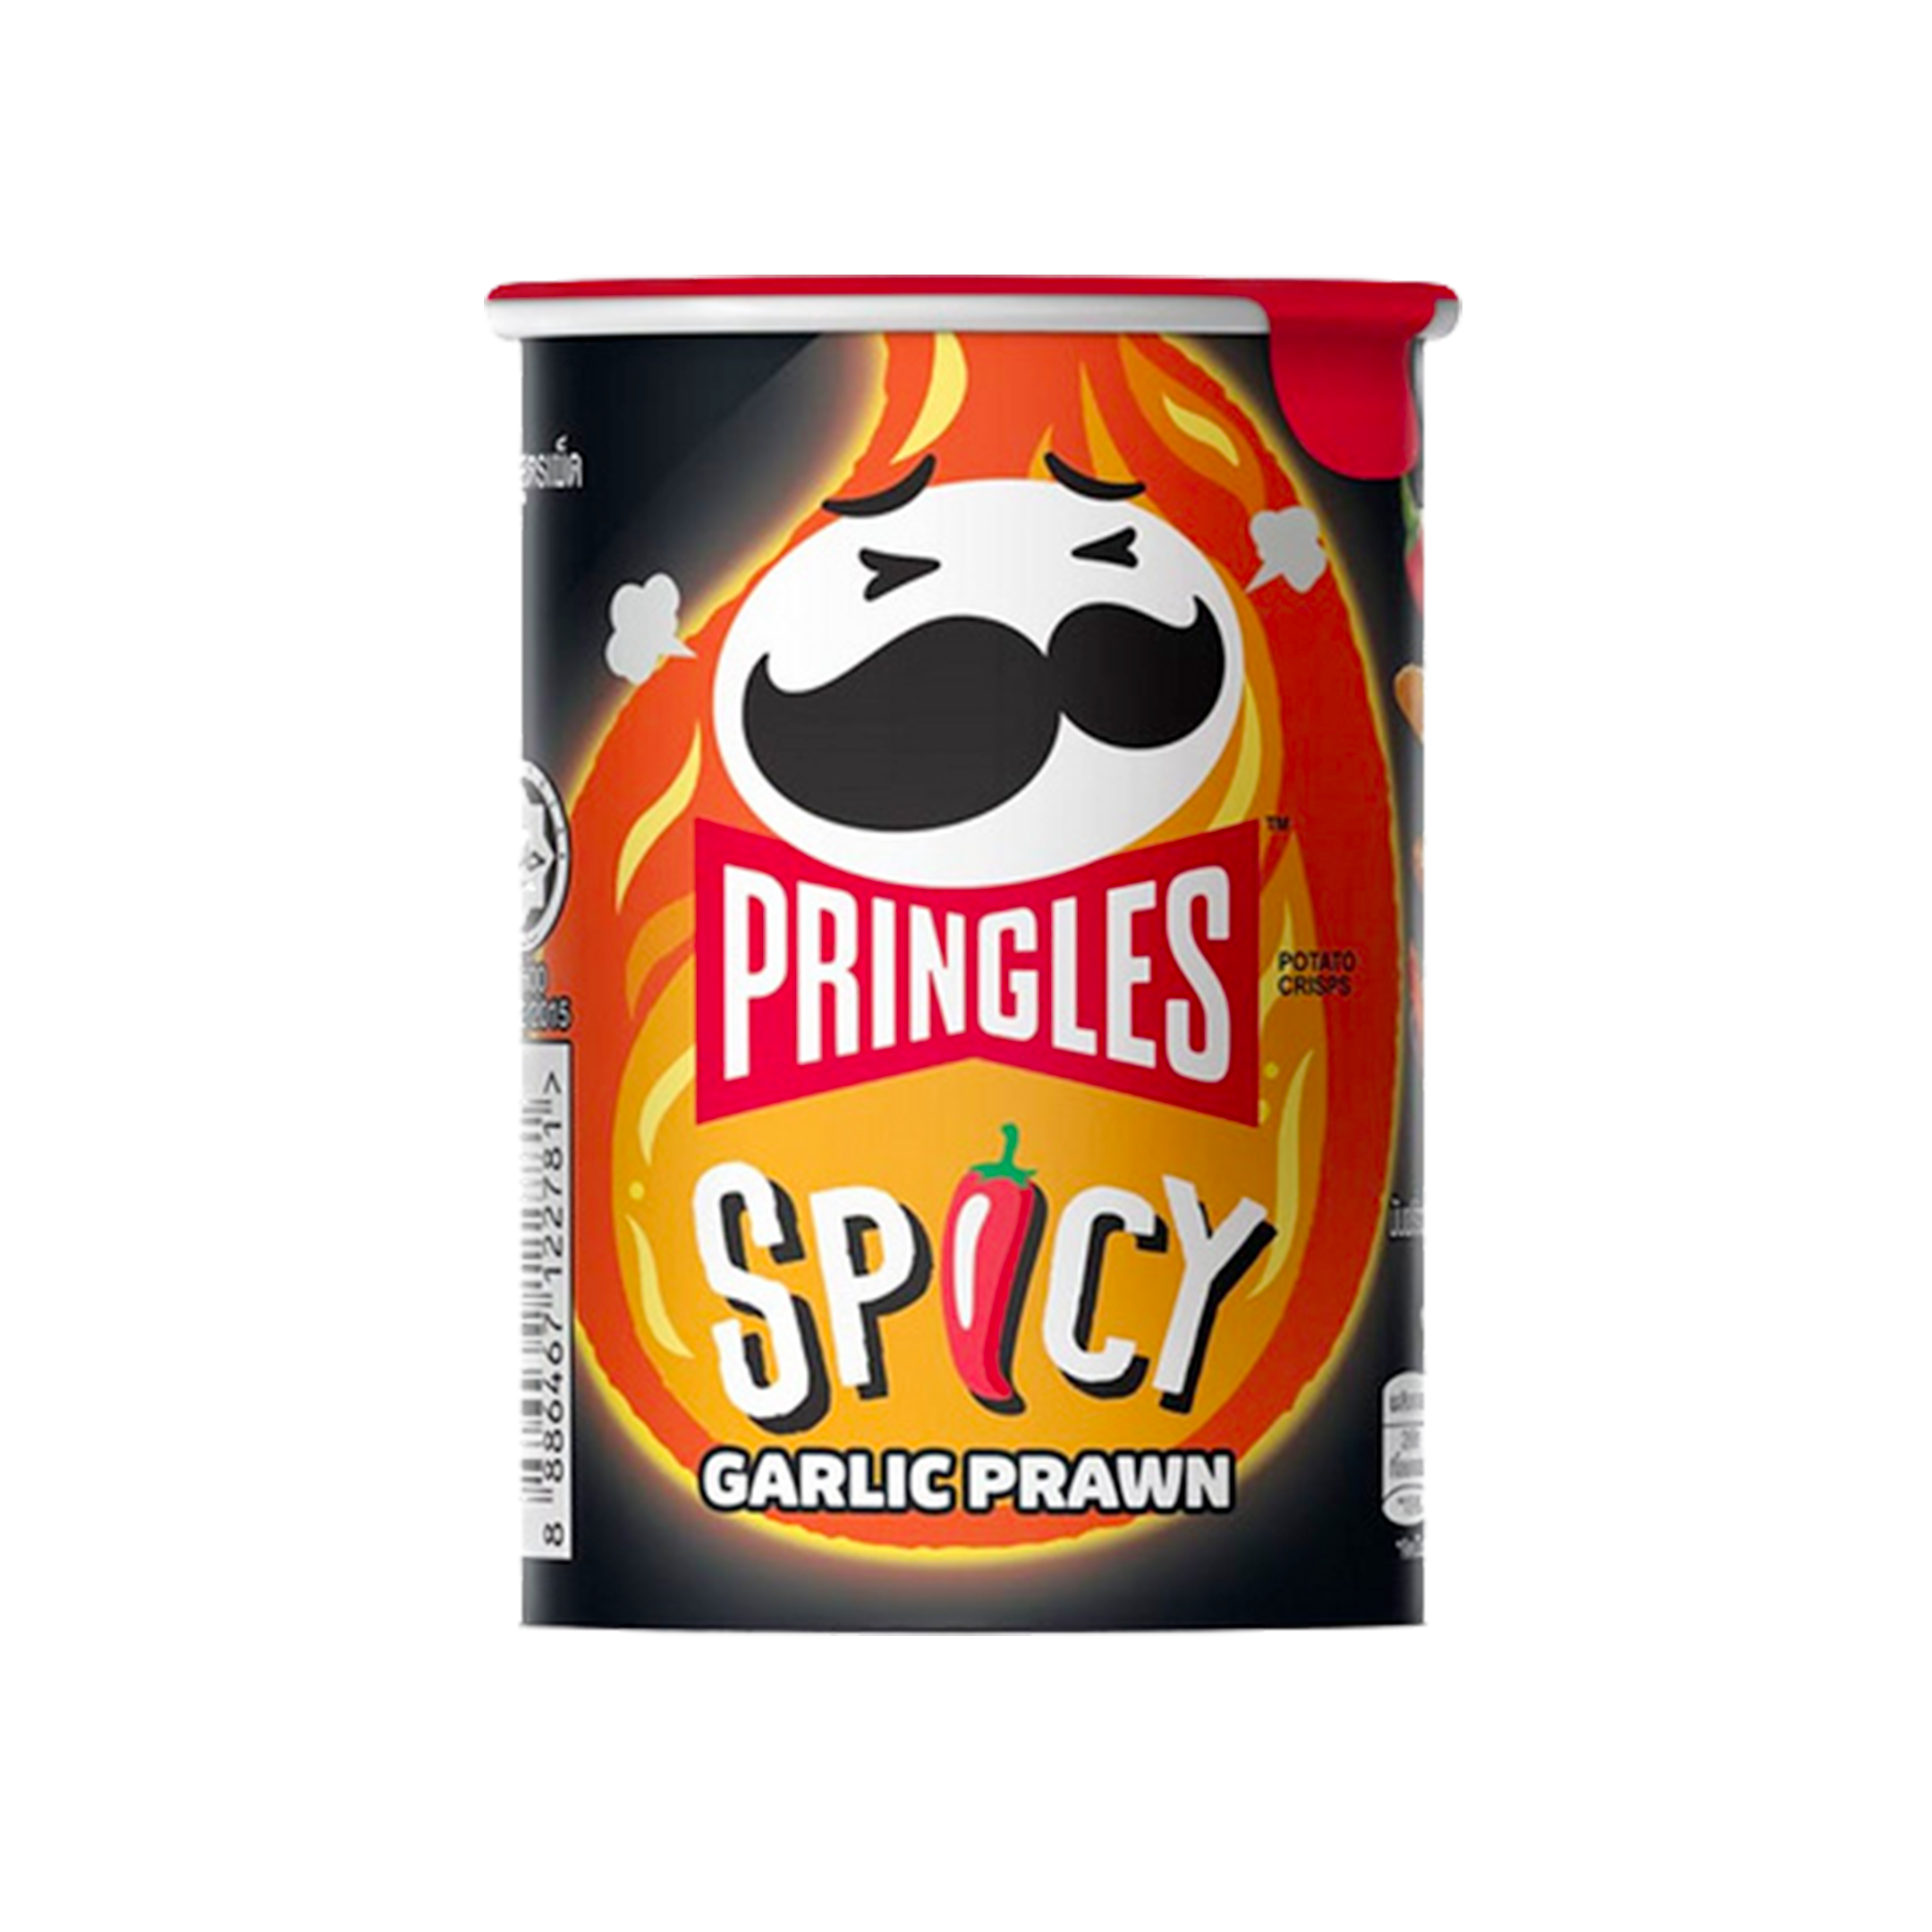 Pringles Spicy Garlic Prawn 42g – Snack Global